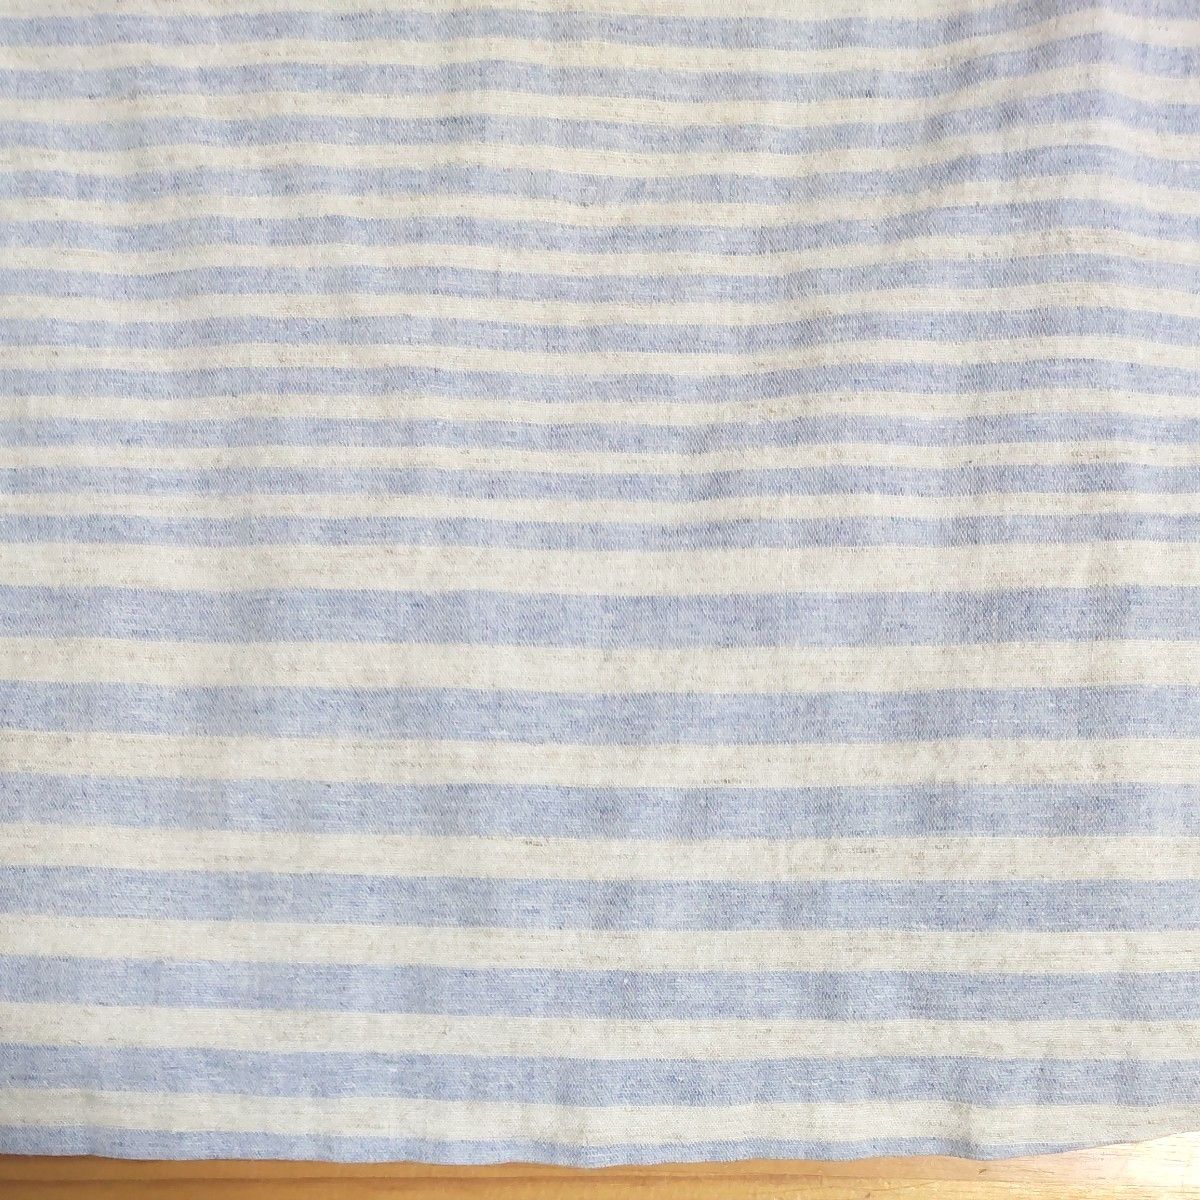 綿麻  ノースリーブ  ワンピース  L～LLサイズ   生成り色+かすみ水色の変わり横縞模様  透け感なし  洗濯可